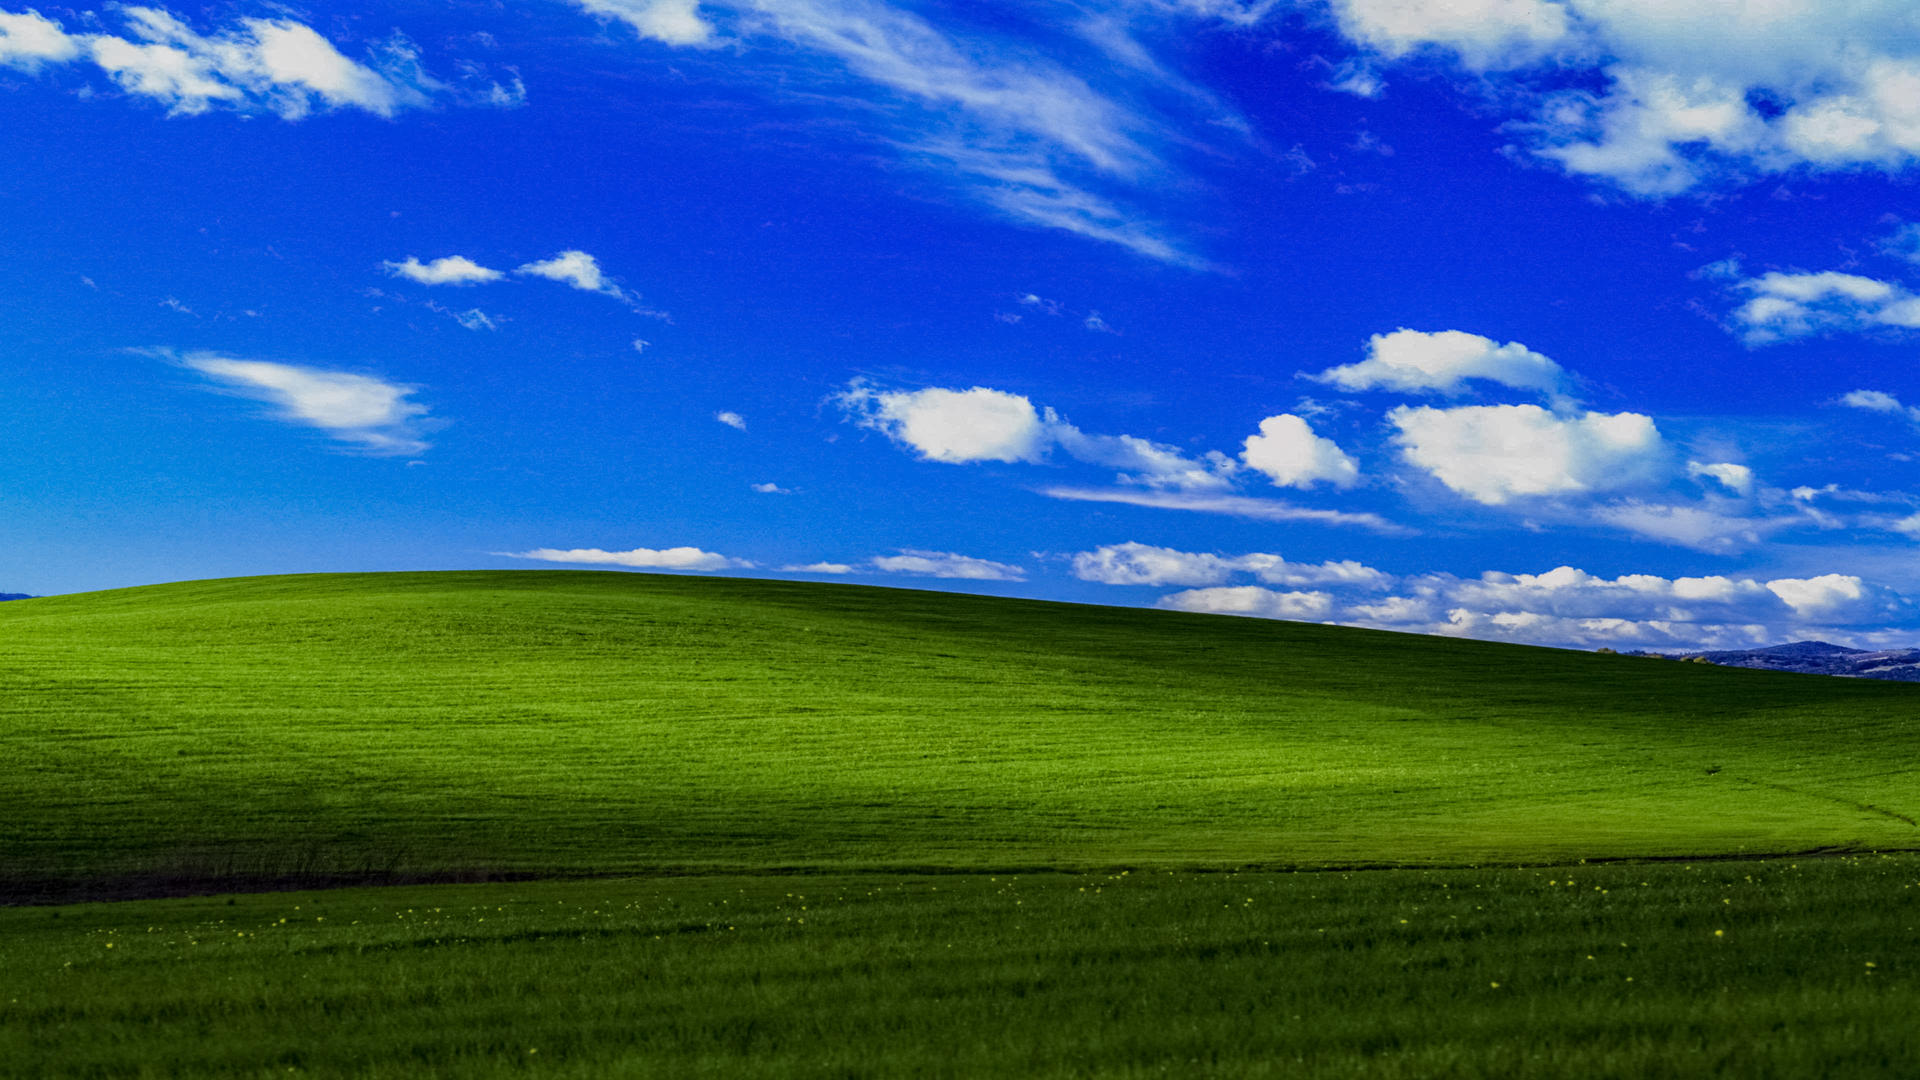 Khám phá những mẫu hình nền Windows XP 4K tuyệt đẹp và đột phá. Từ kỹ thuật số cho đến thiên nhiên, từ hình ảnh văn hóa đến sáng tạo đầy tính nghệ thuật, bộ sưu tập hình nền này sẽ đem đến cho bạn những trải nghiệm tuyệt vời và hấp dẫn nhất.